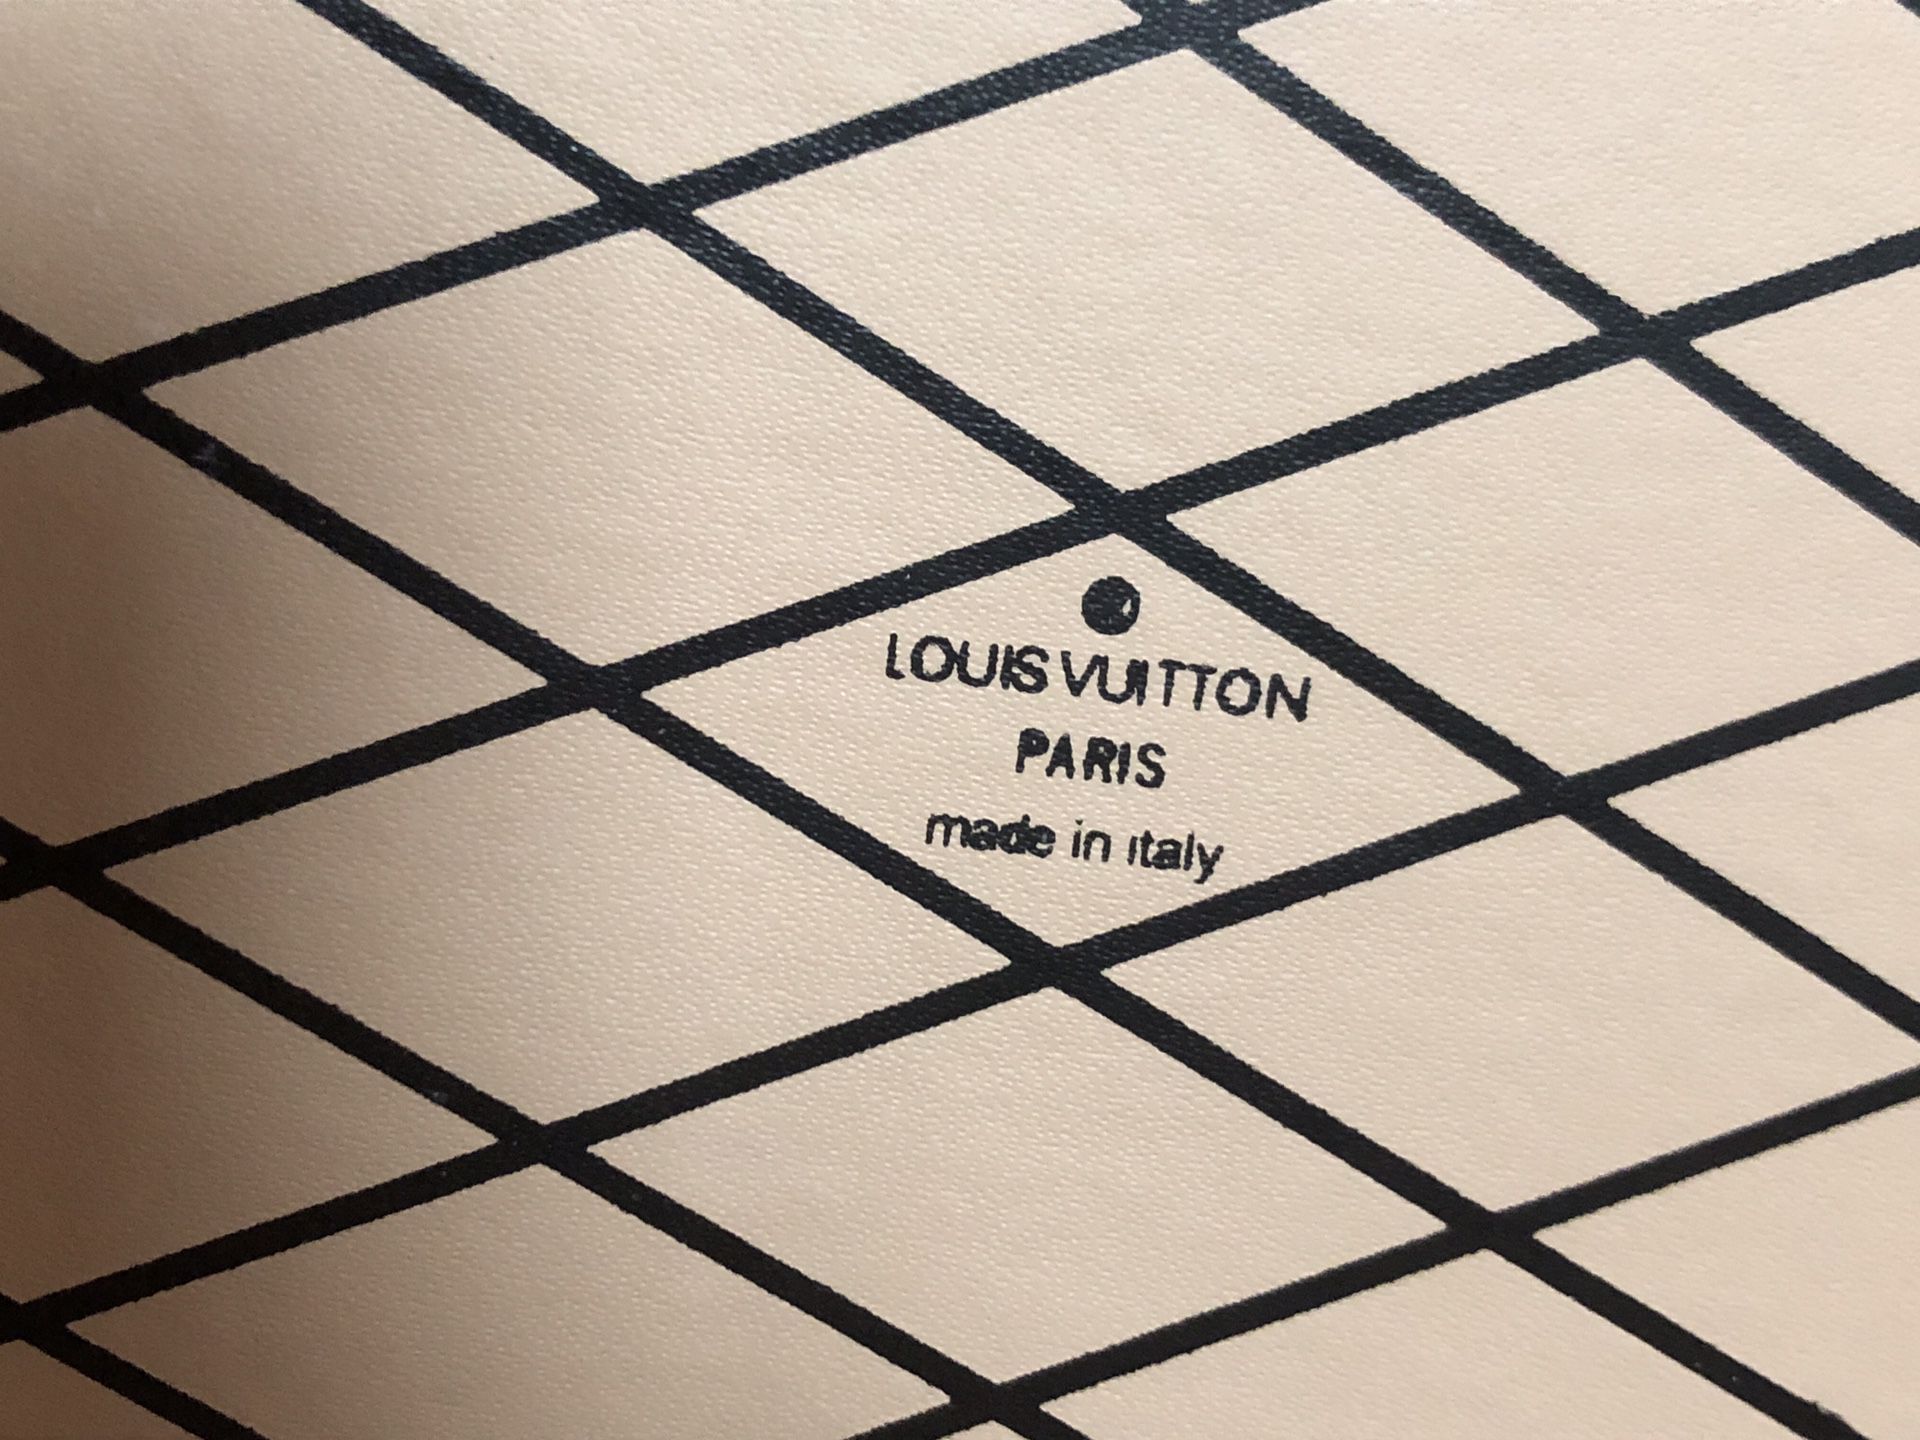 Louis Vuitton Boite Chapeau Souple PM Bags for Sale in Asheville, NC -  OfferUp